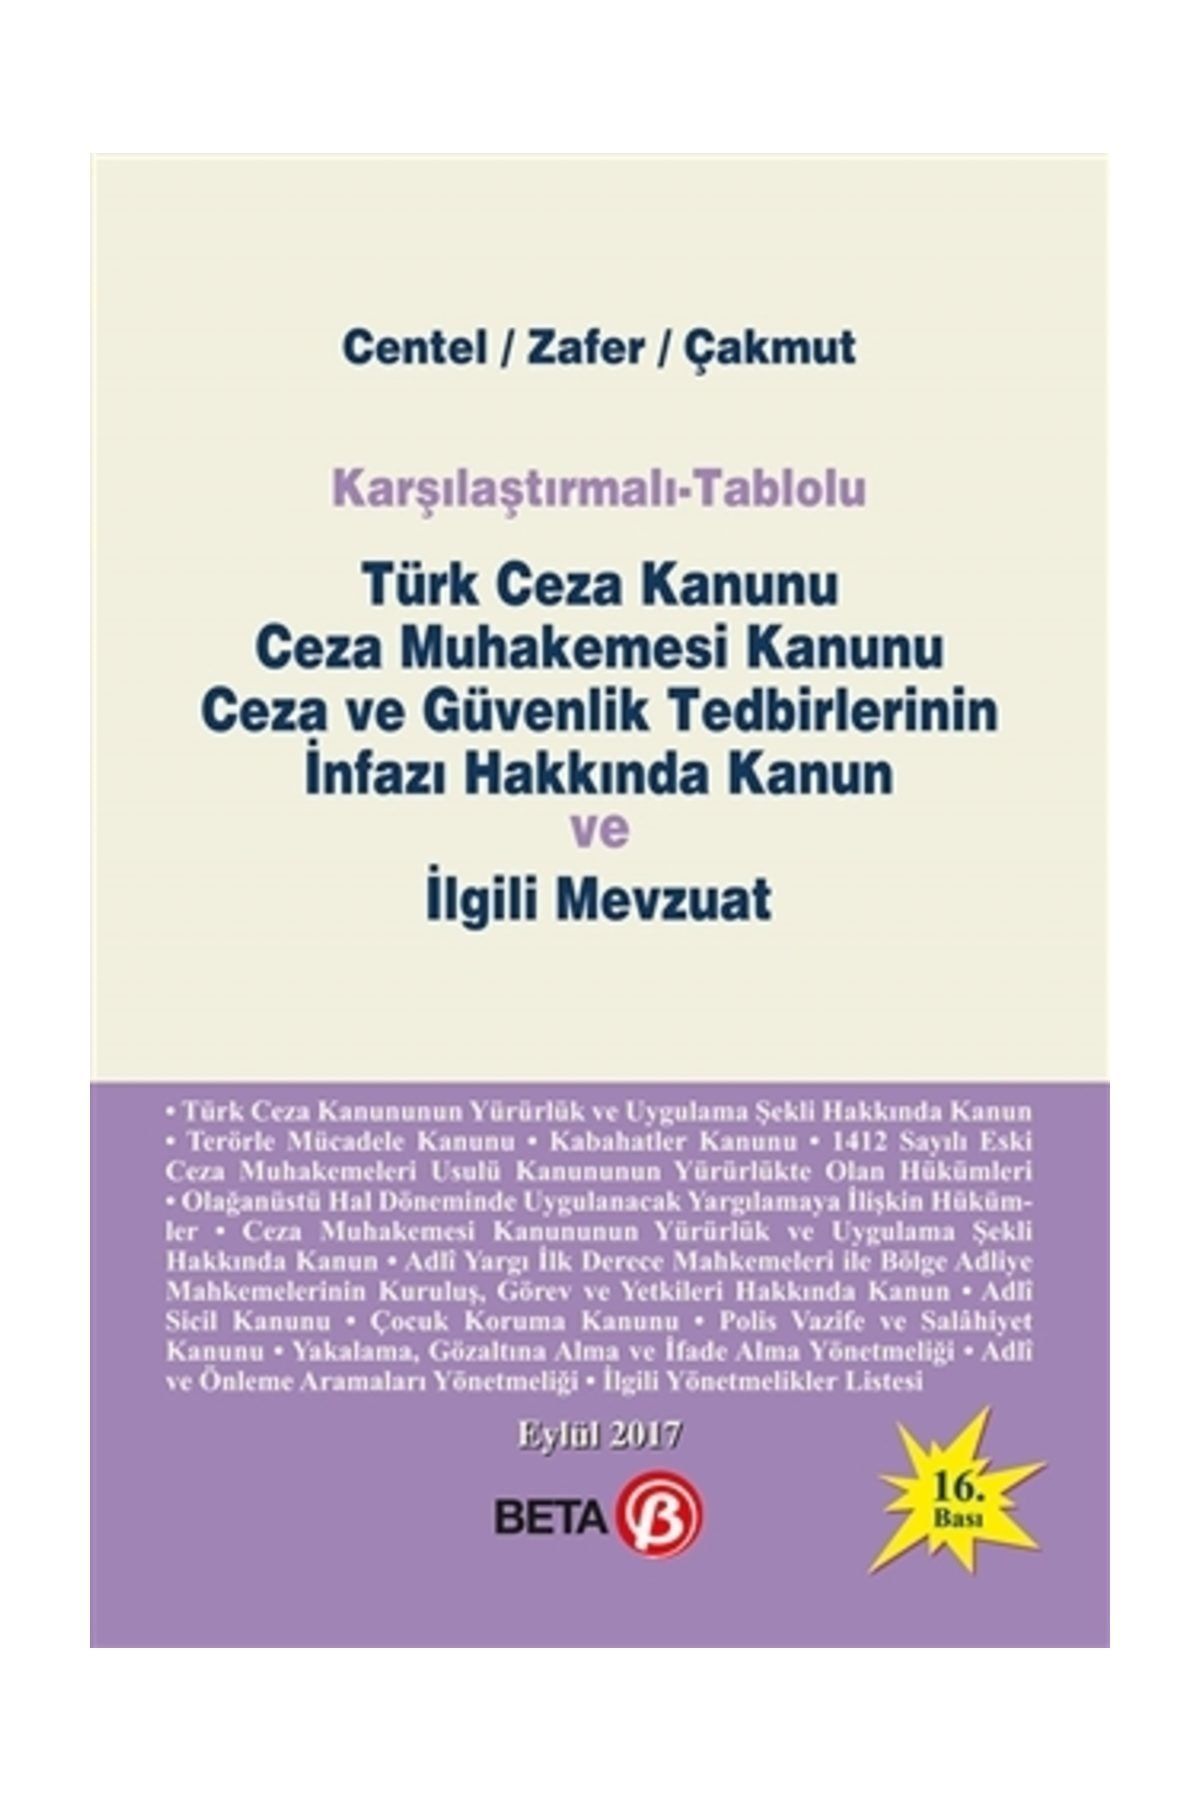 Beta Yayınları Karşılaştırmalı - Tablolu Türk Ceza Kanunu Ceza Muhakemesi Kanunu Ceza Ve Güvenlik Tedbirlerinin